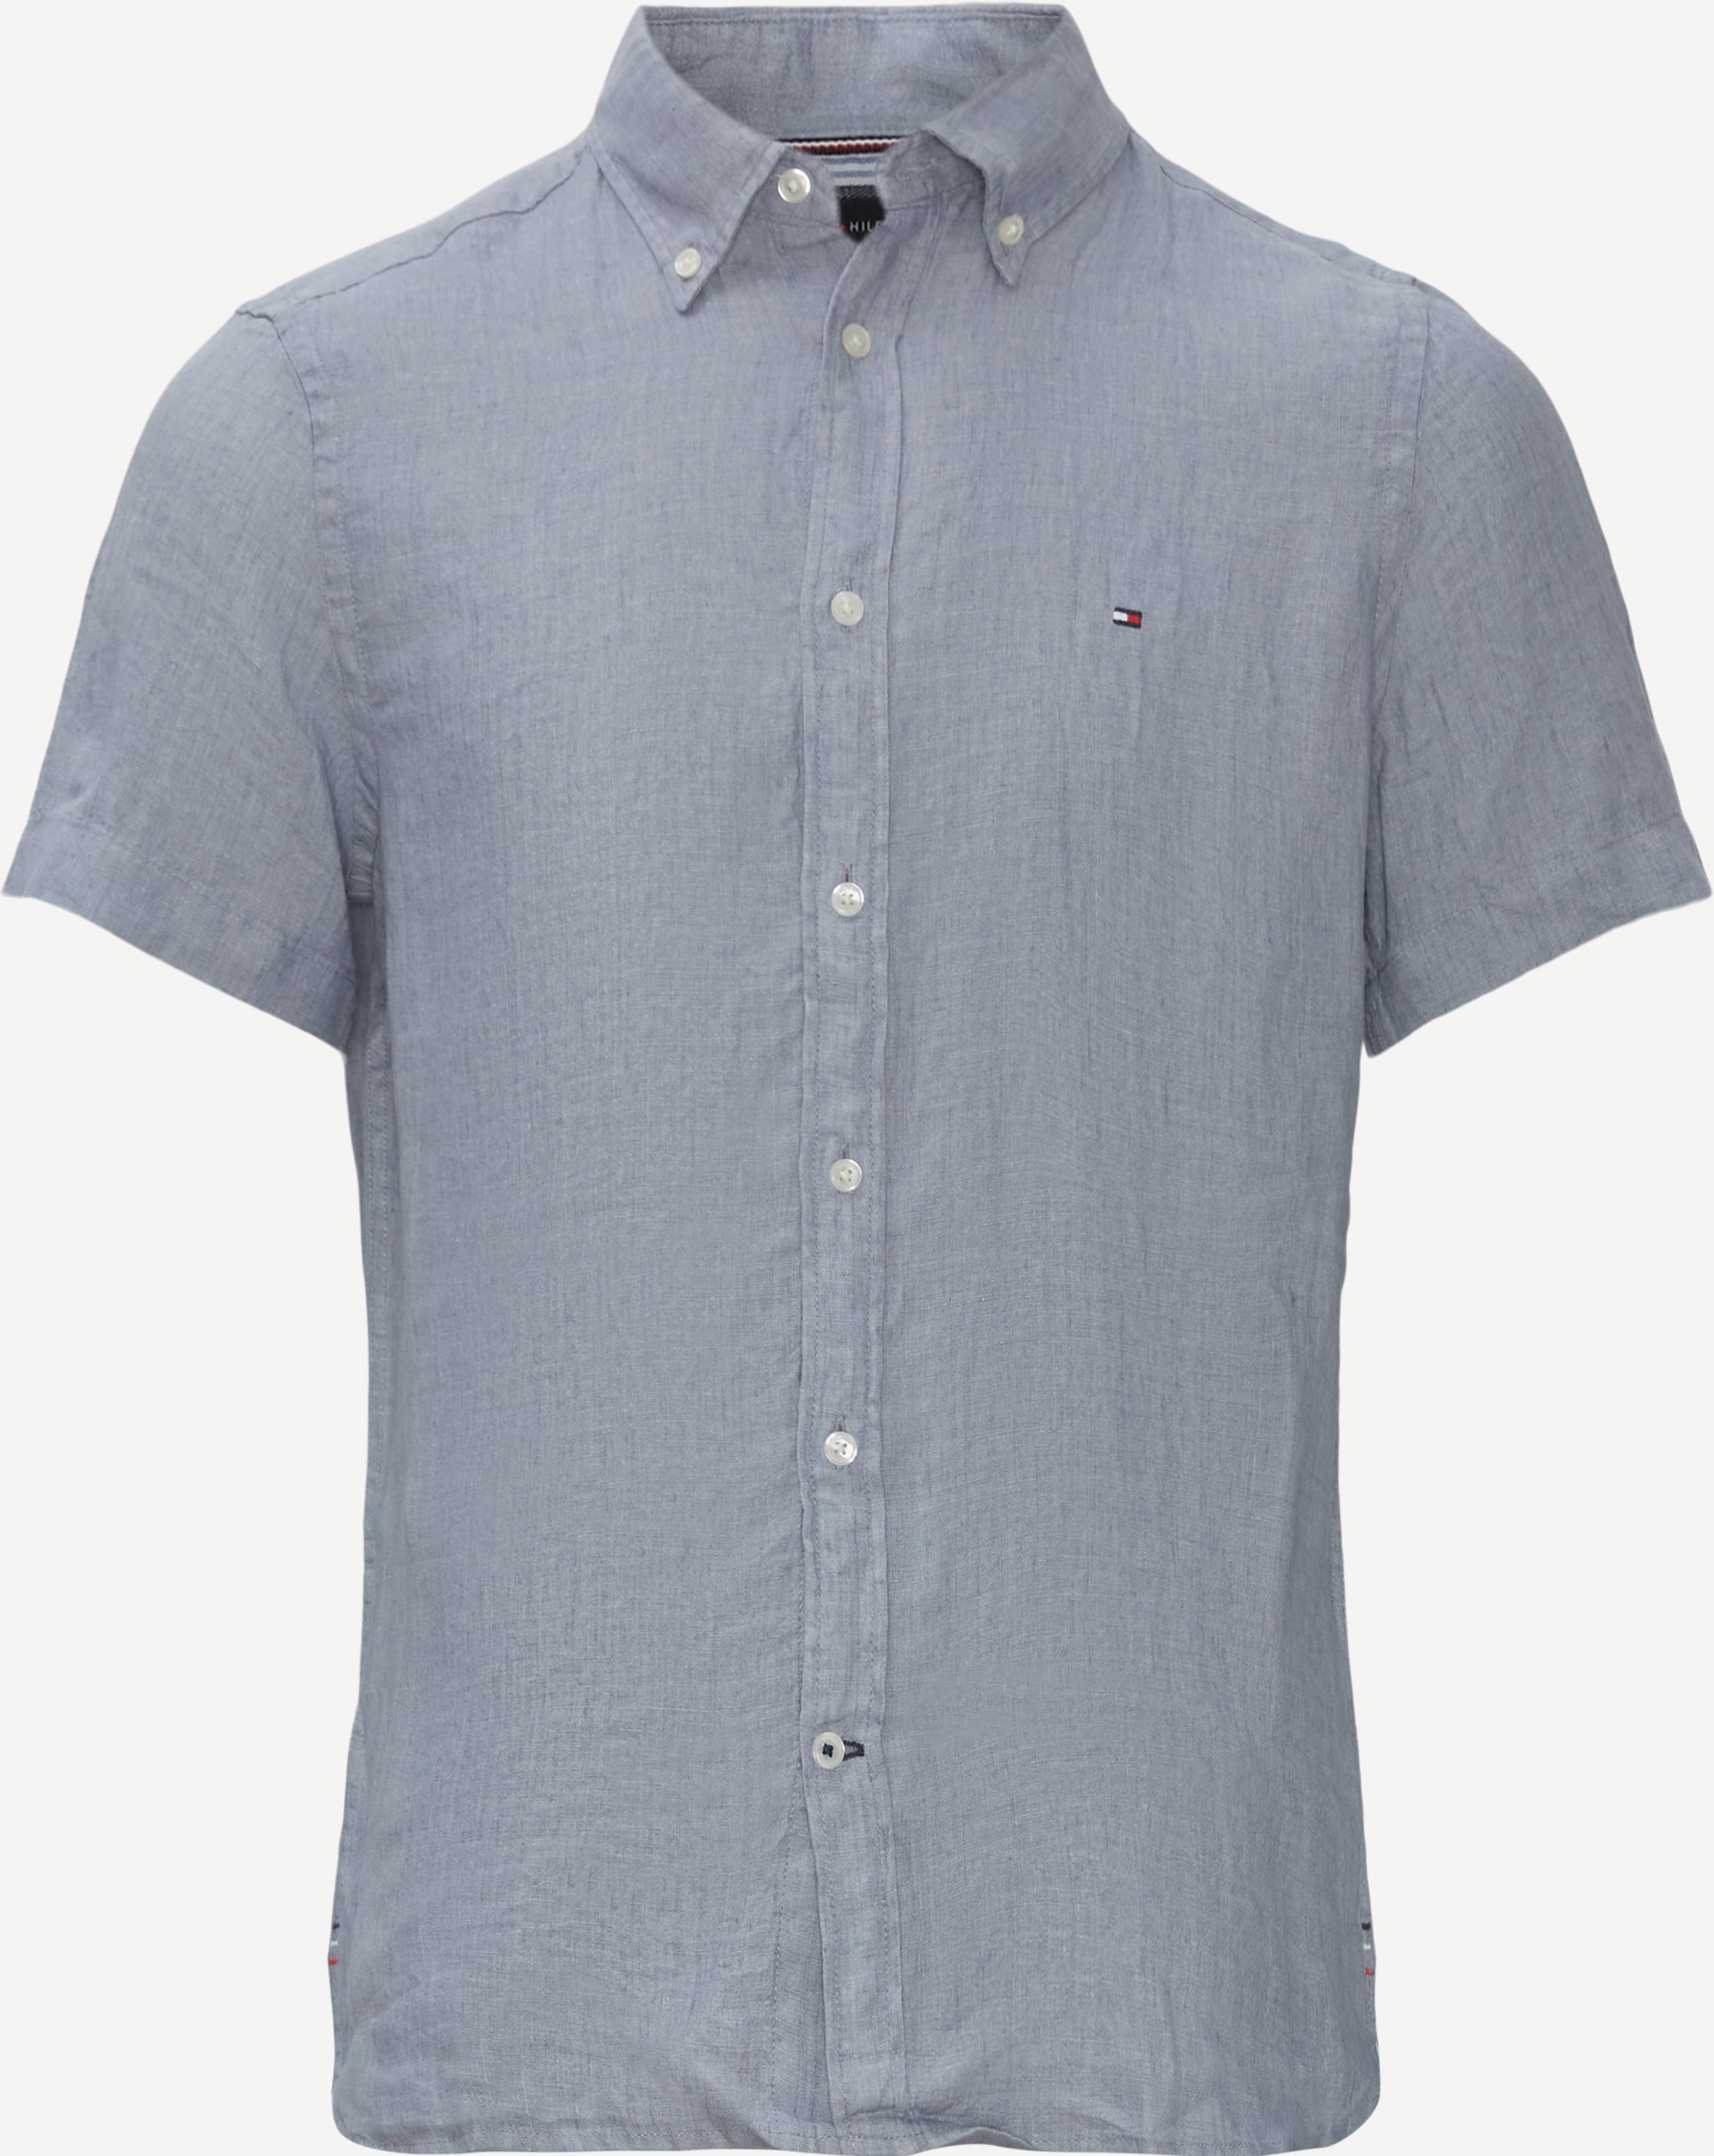 Pigment Dyed Linen SF Skjorte - Kortærmede skjorter - Slim fit - Blå